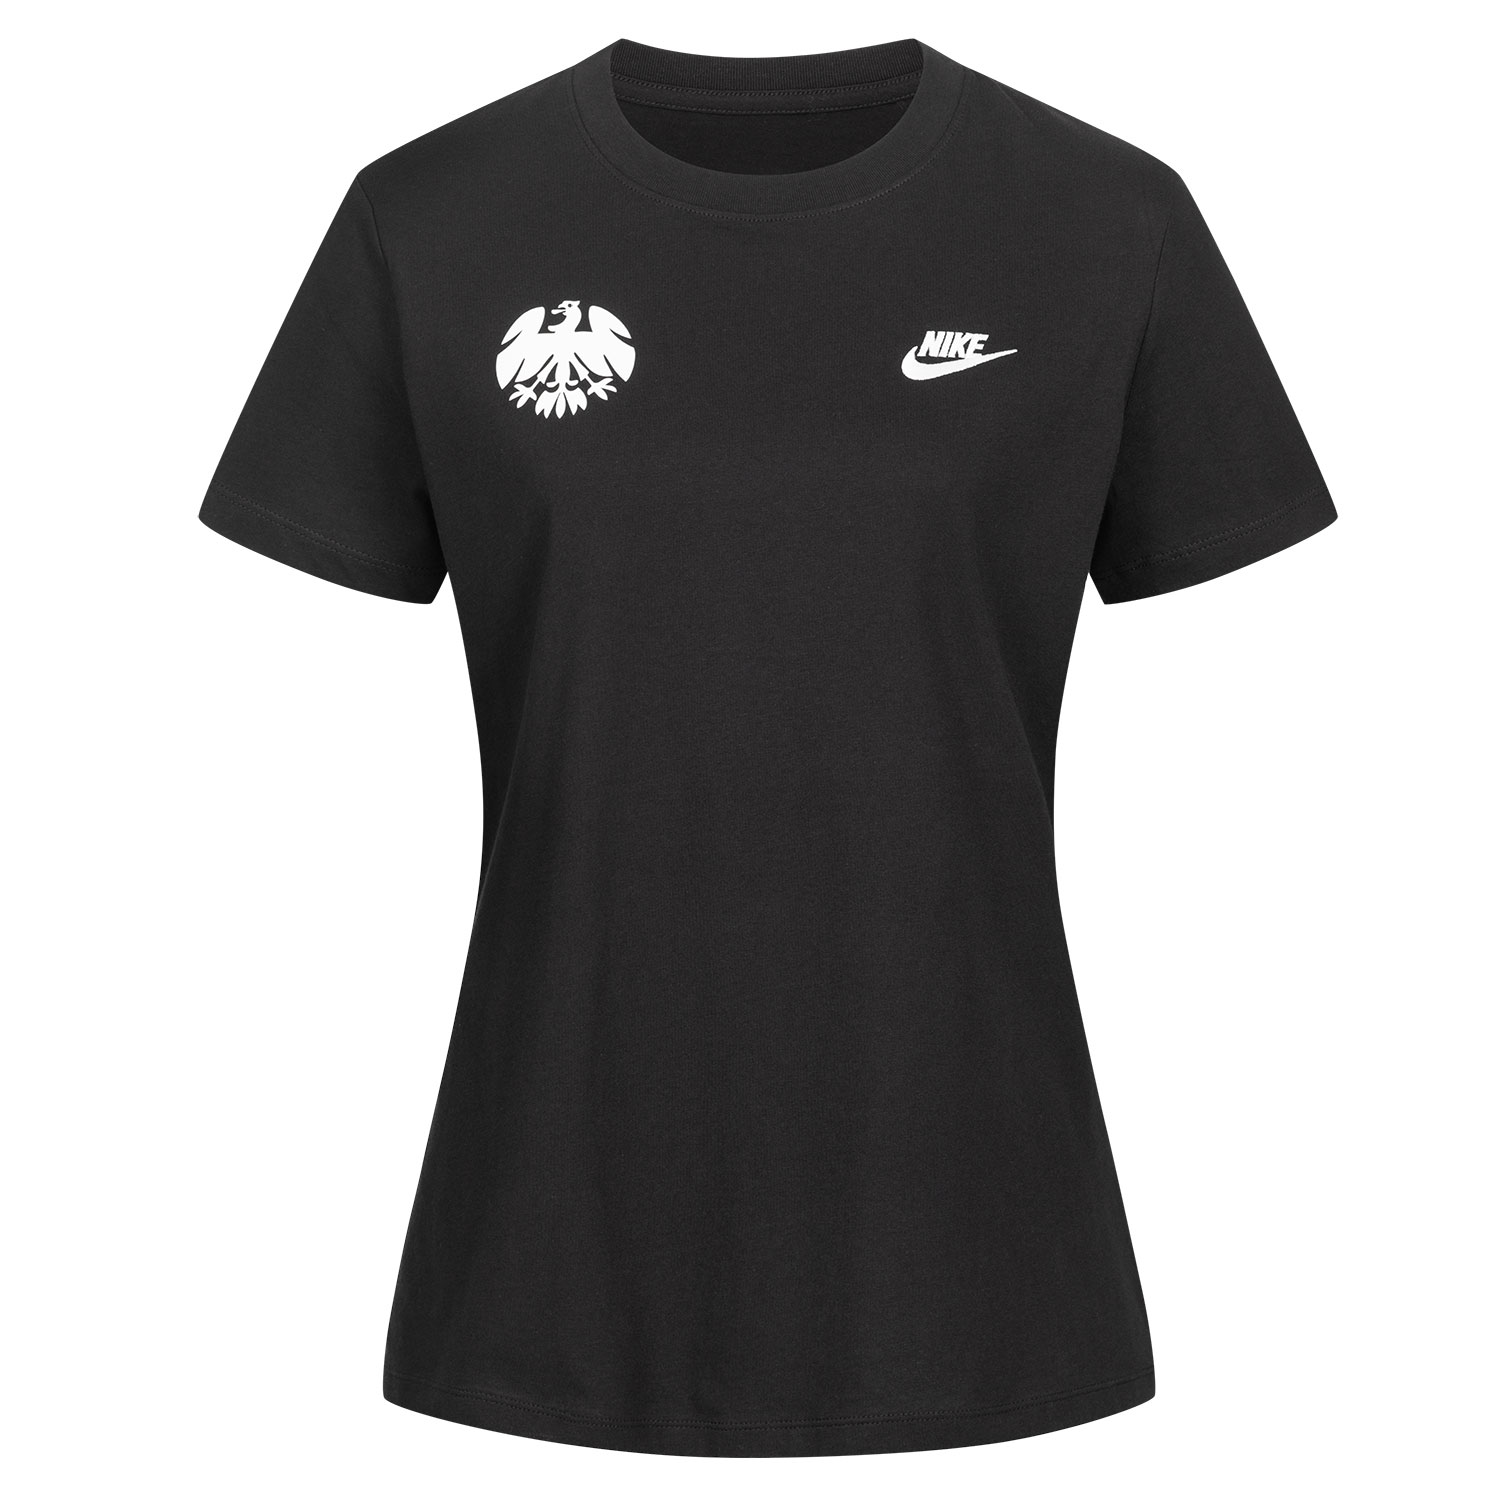 Bild 1: Nike Damen Shirt New Eighties black